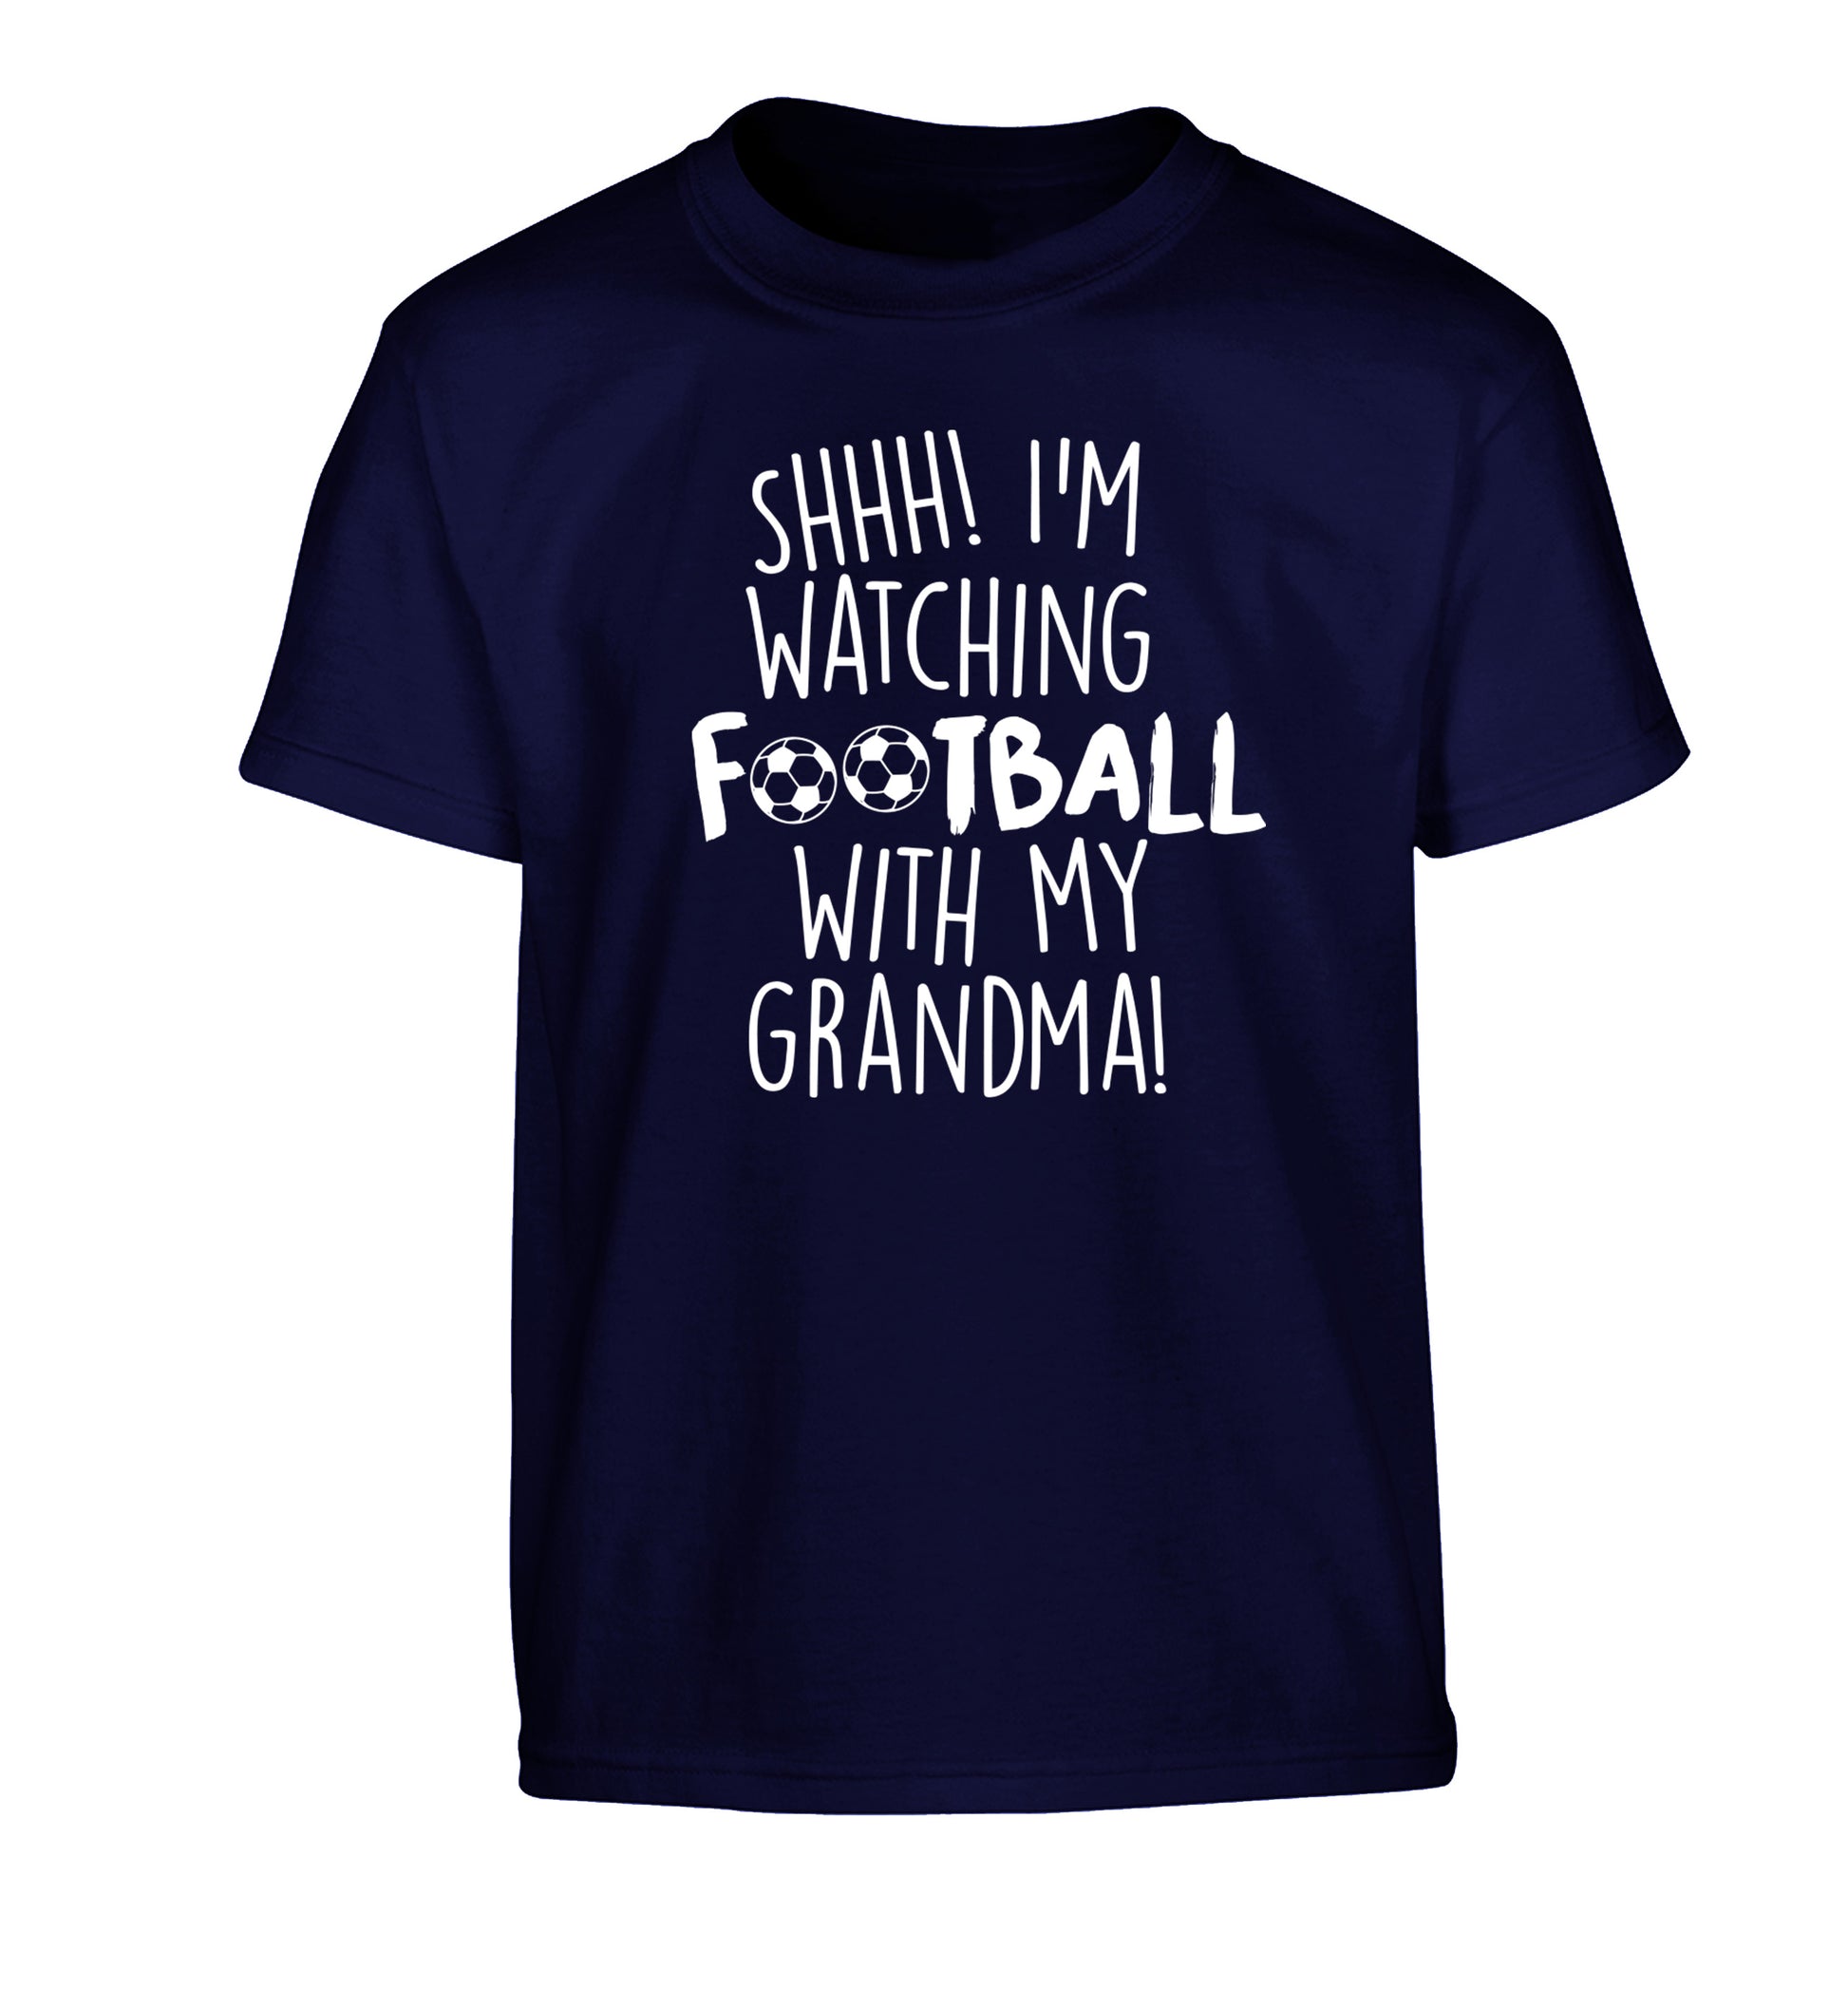 Shhh I'm watching football with my grandma Children's navy Tshirt 12-14 Years